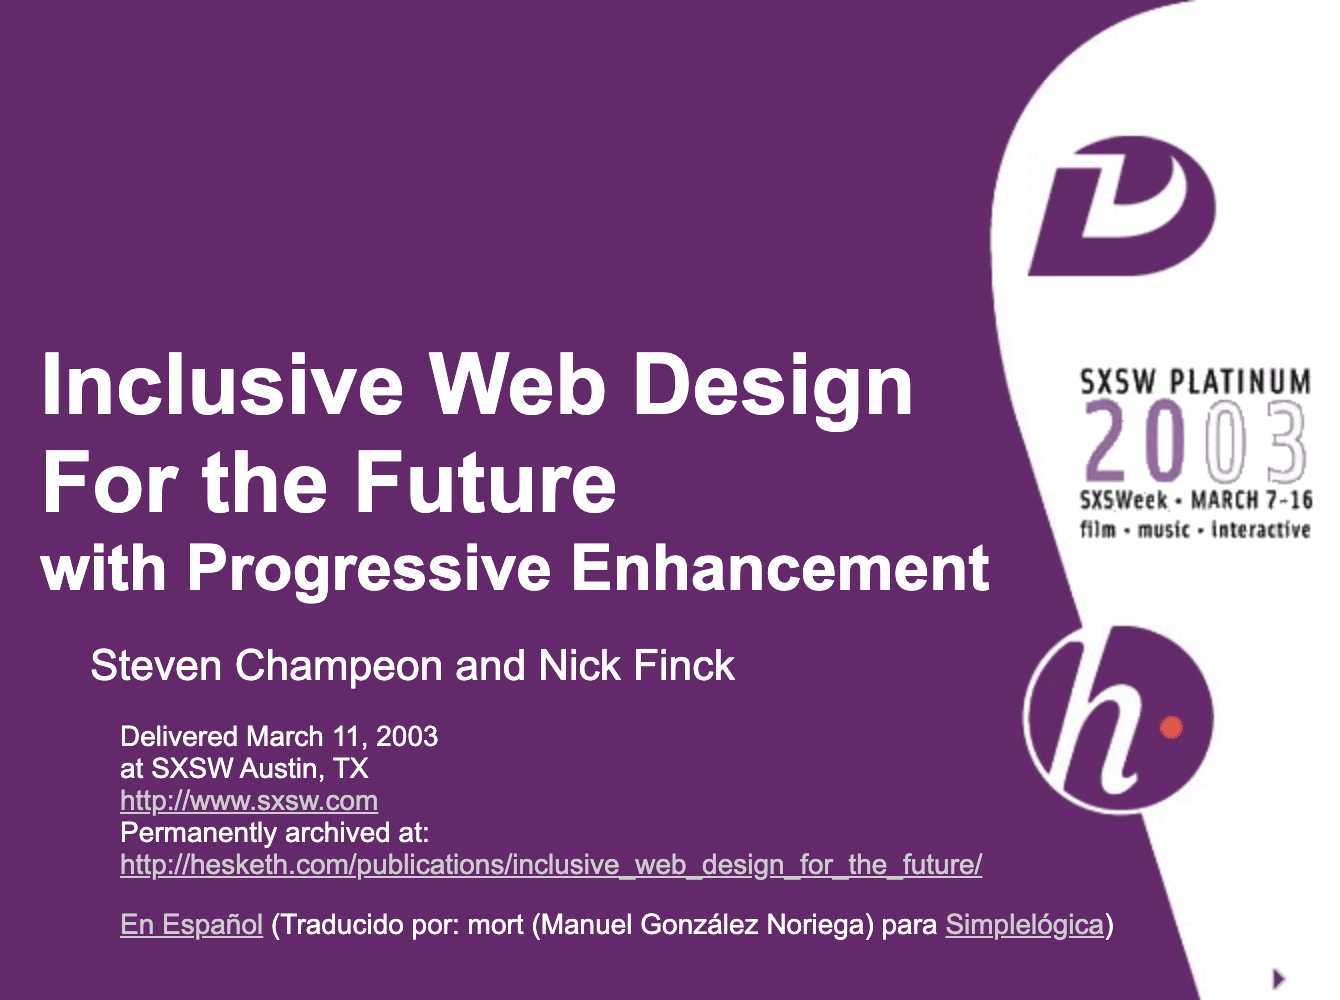 Desain web inklusif untuk masa depan dengan {i>progressive enhancement<i}. Slide judul dari presentasi asli Finck dan Champeon.